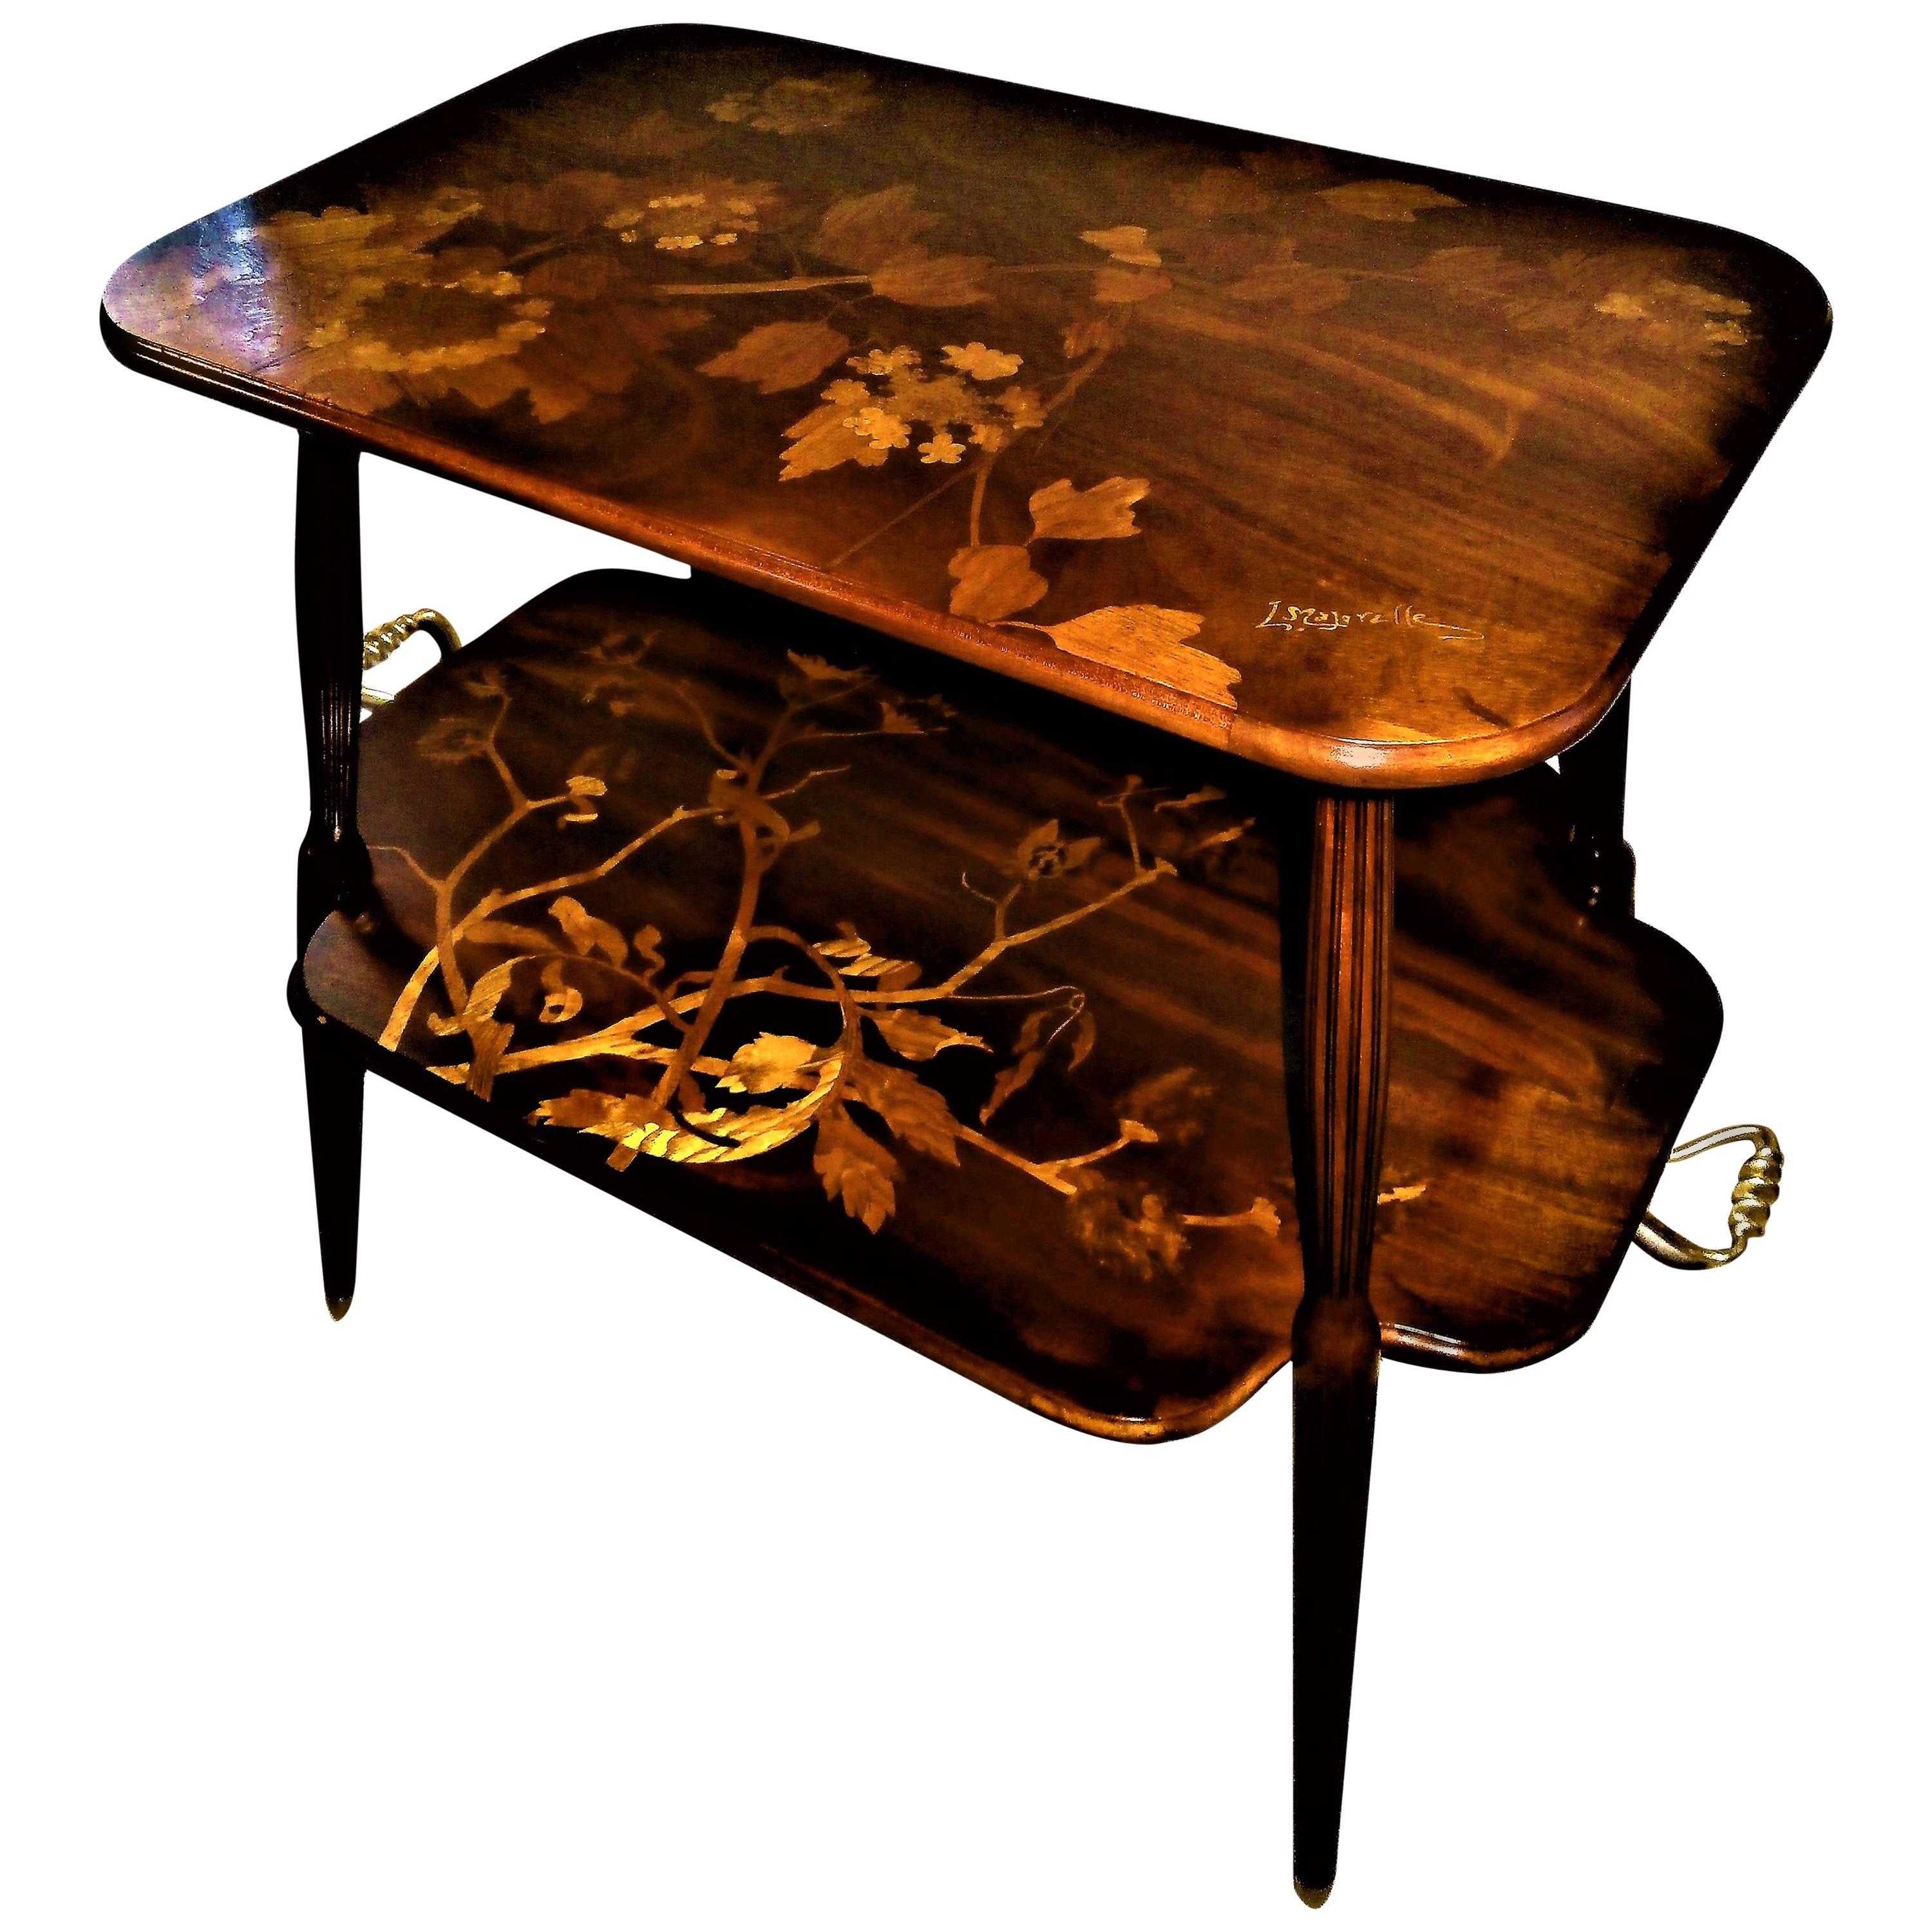 Unique Louis Majorelle French Art Nouveau Marquetry Table, Signed